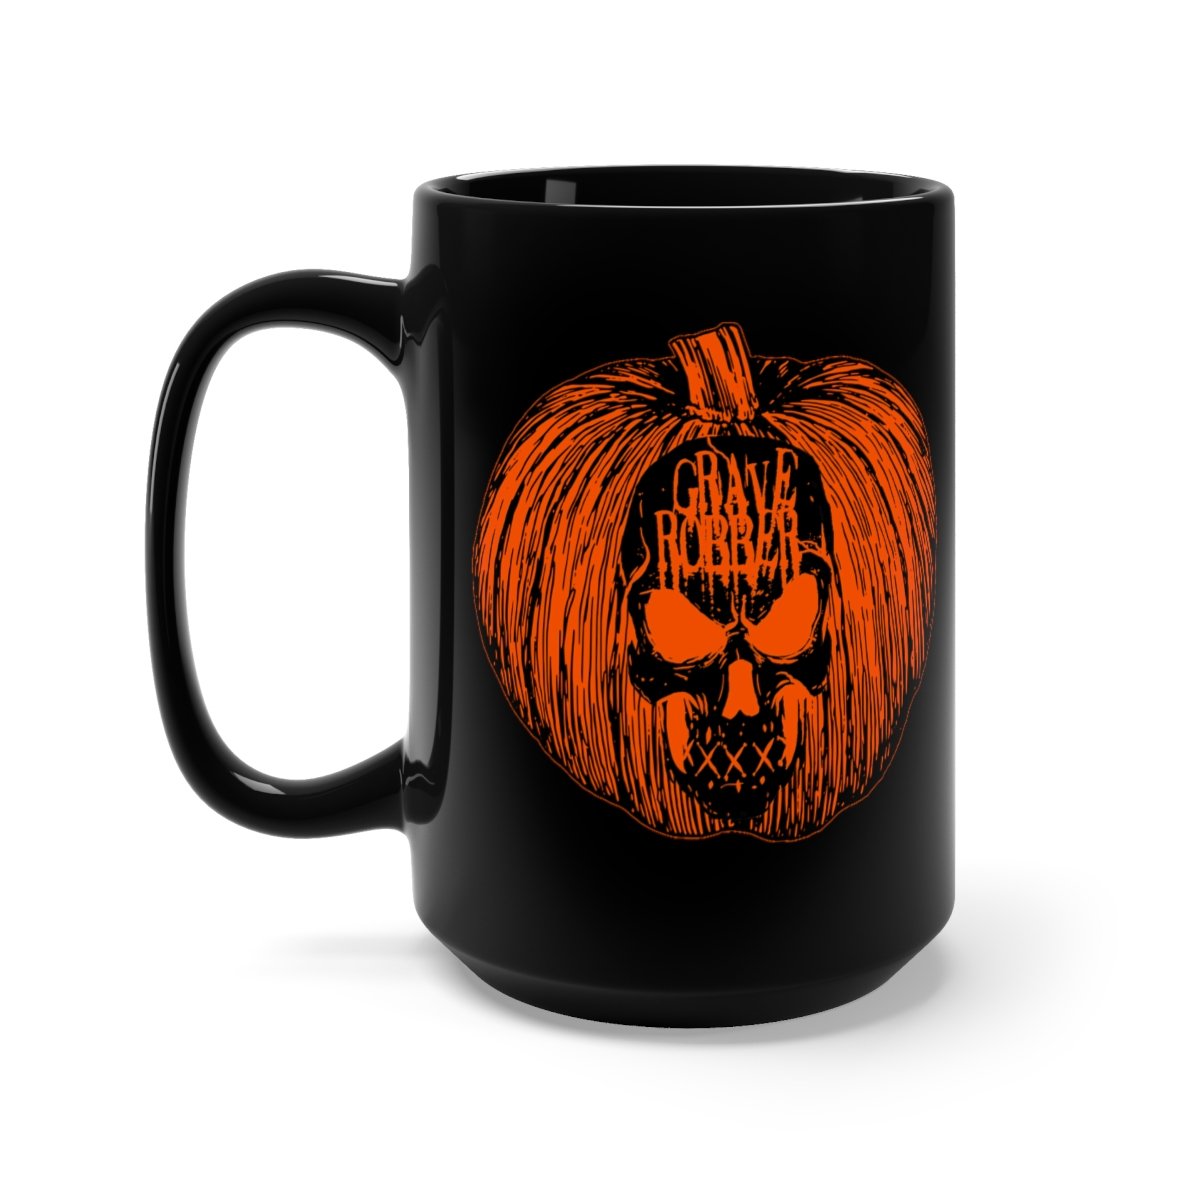 Grave Robber Pumpkin Limited Edition Black Mug 15oz